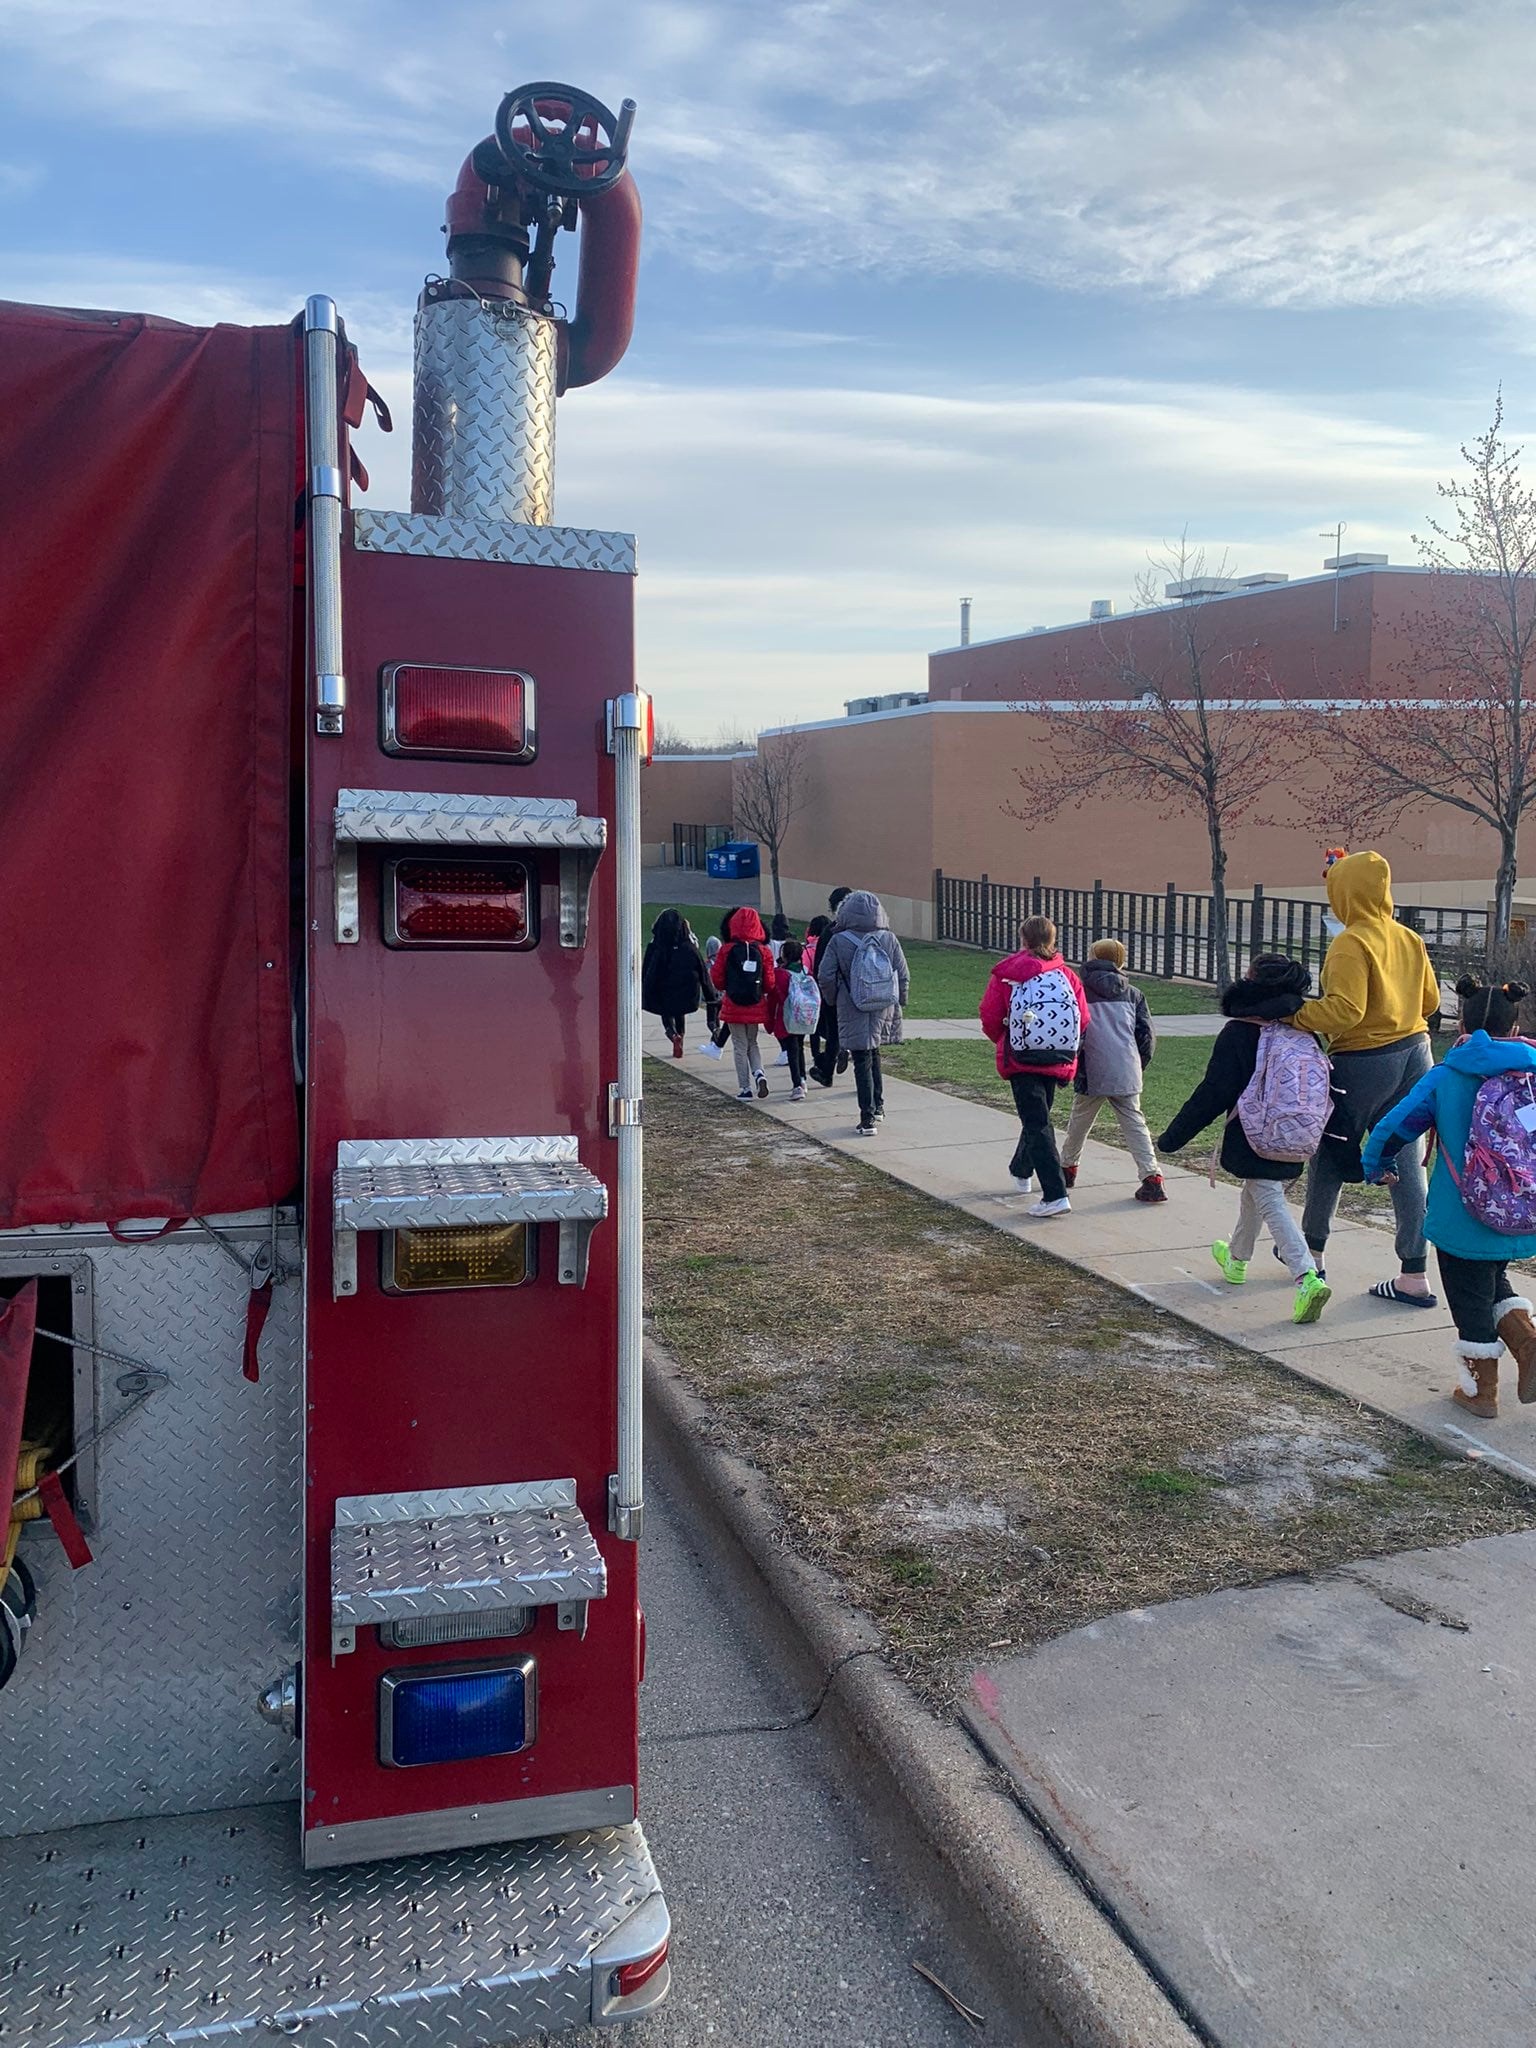 Students walk on the sidewalk alongside a red fire truck in Saint Paul, Minnesota.